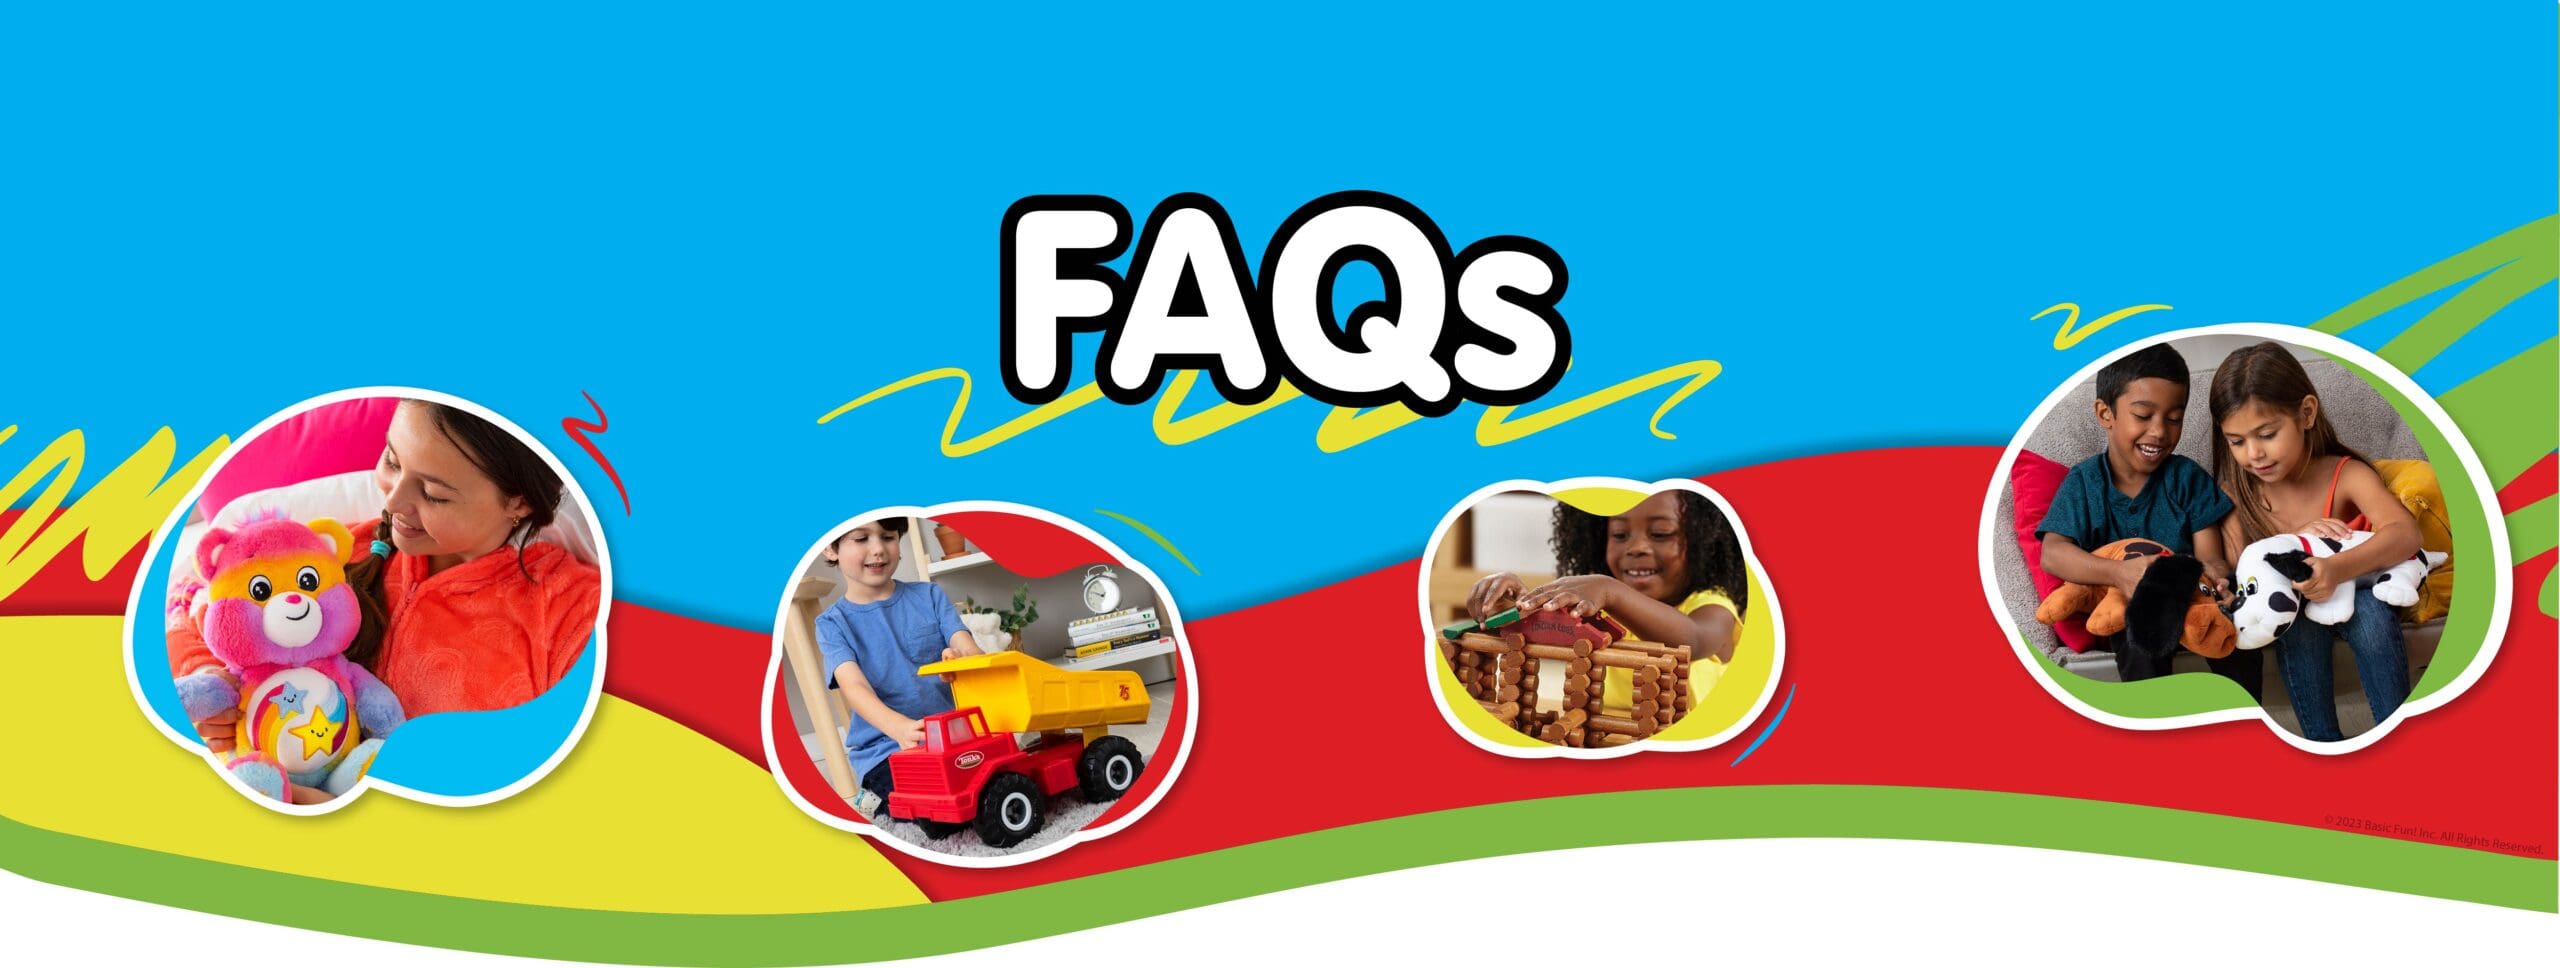 FAQs banner